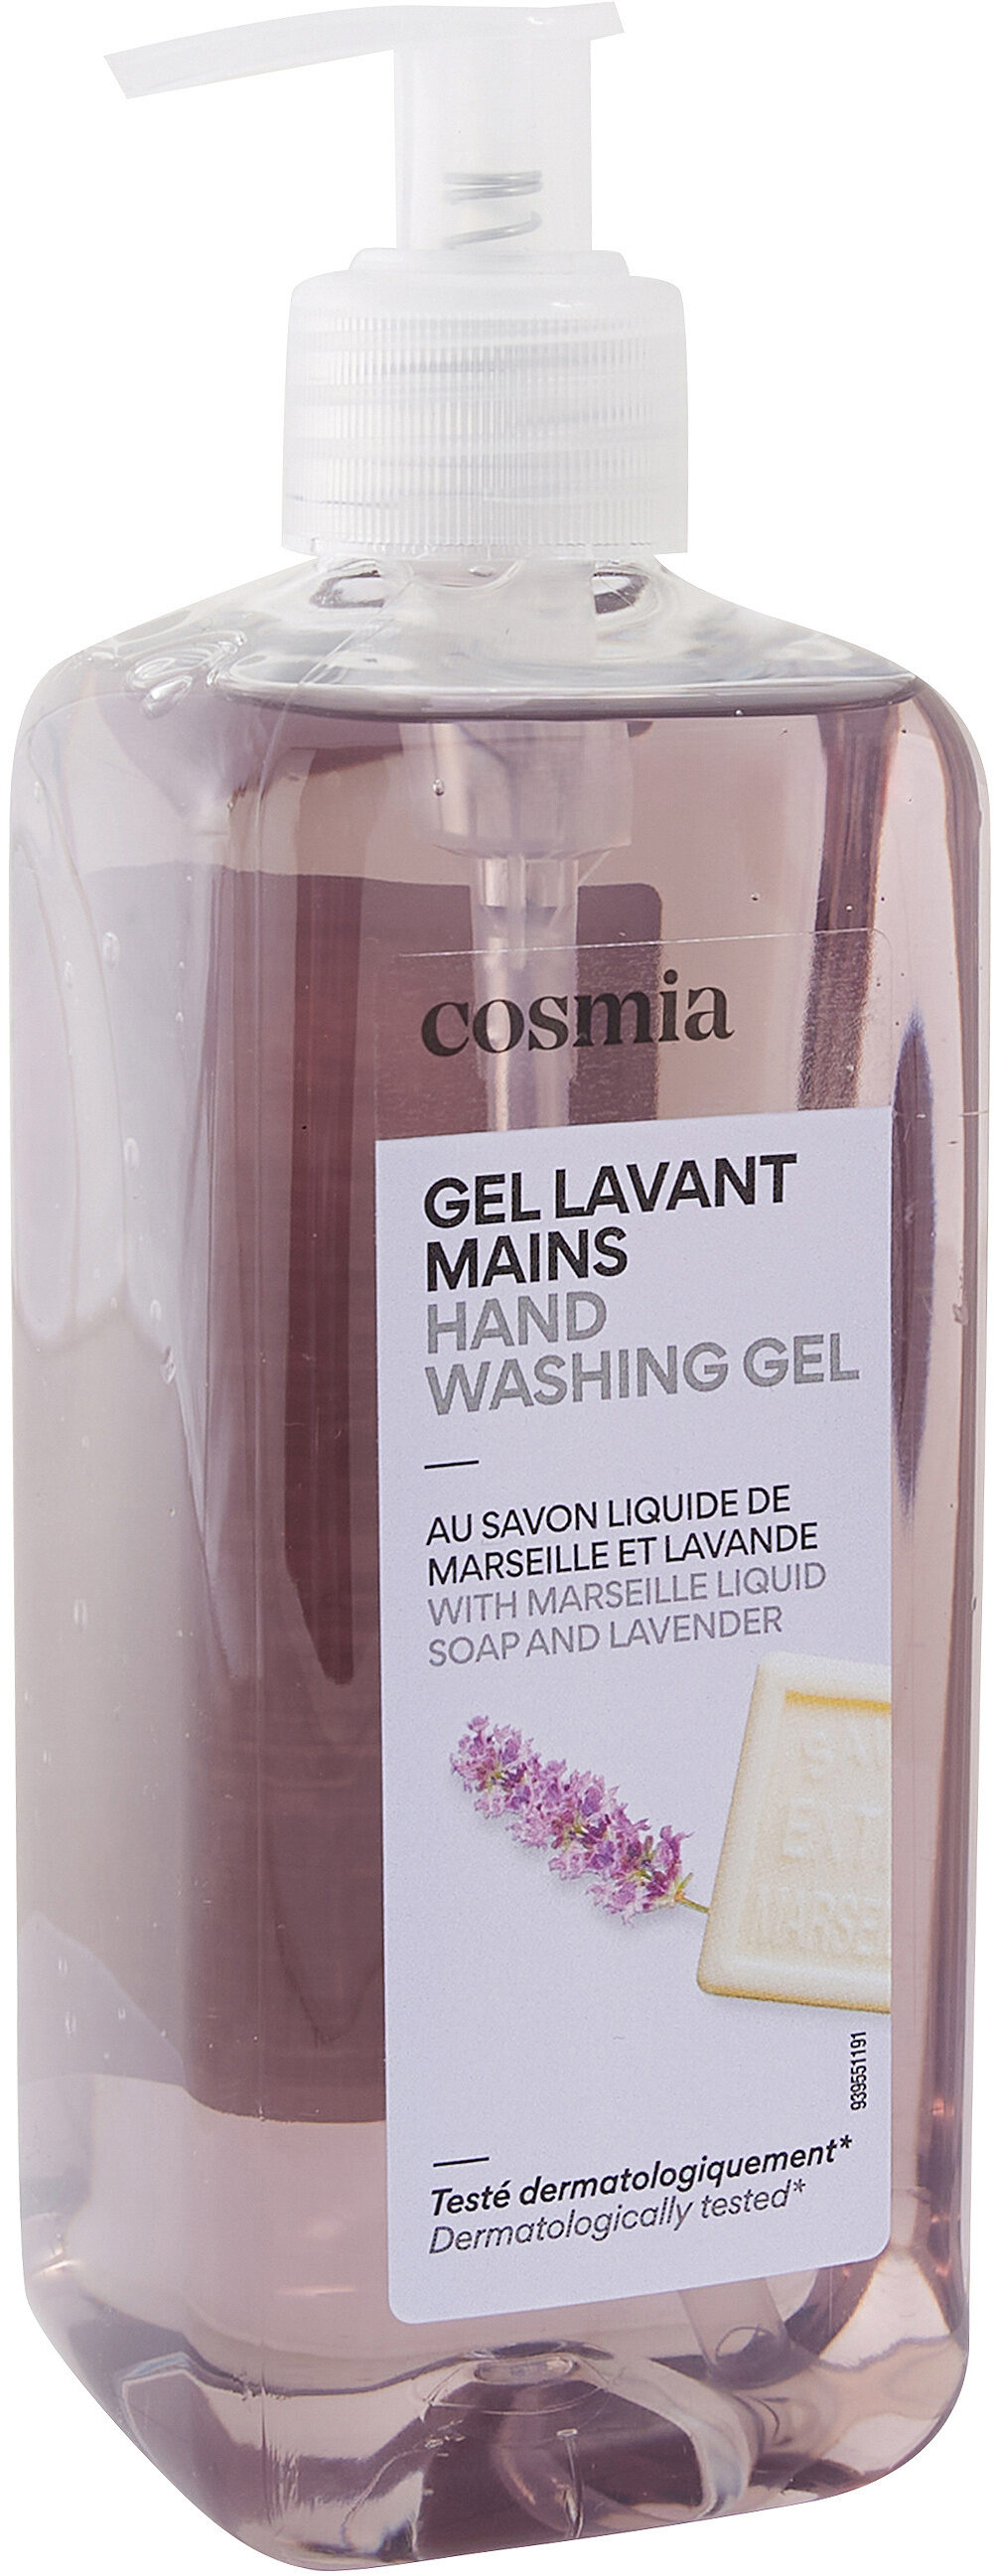 Cosmia savon main marseille et lavande 500 ml - Produkt - fr